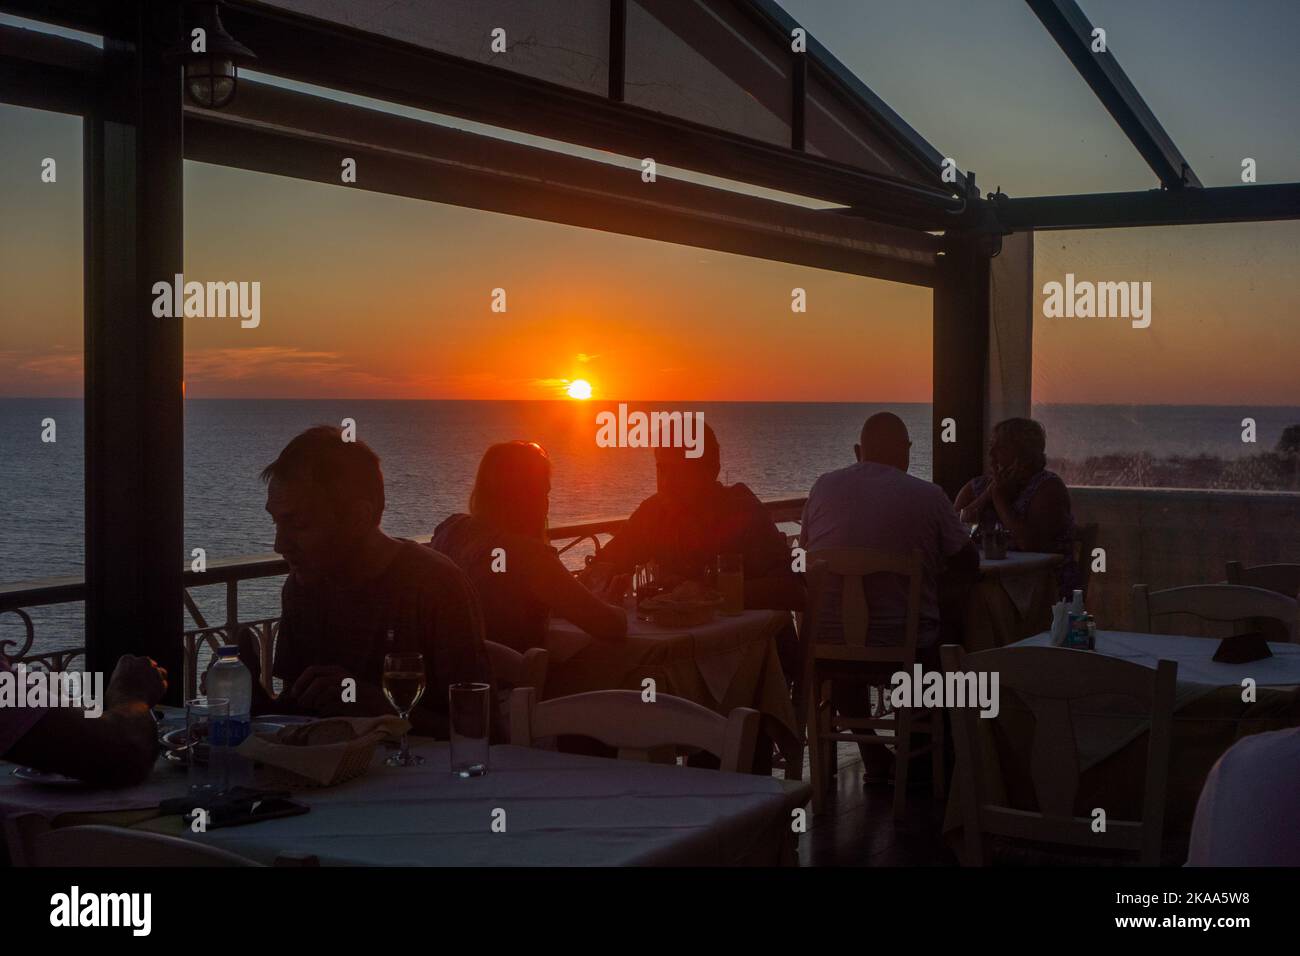 Goldener Sonnenuntergang über der Ägäis im Ferienort Molyvos auf der griechischen Insel Lesvos Griechenland mit Menschen, die in einem Tavernenrestaurant essen Stockfoto